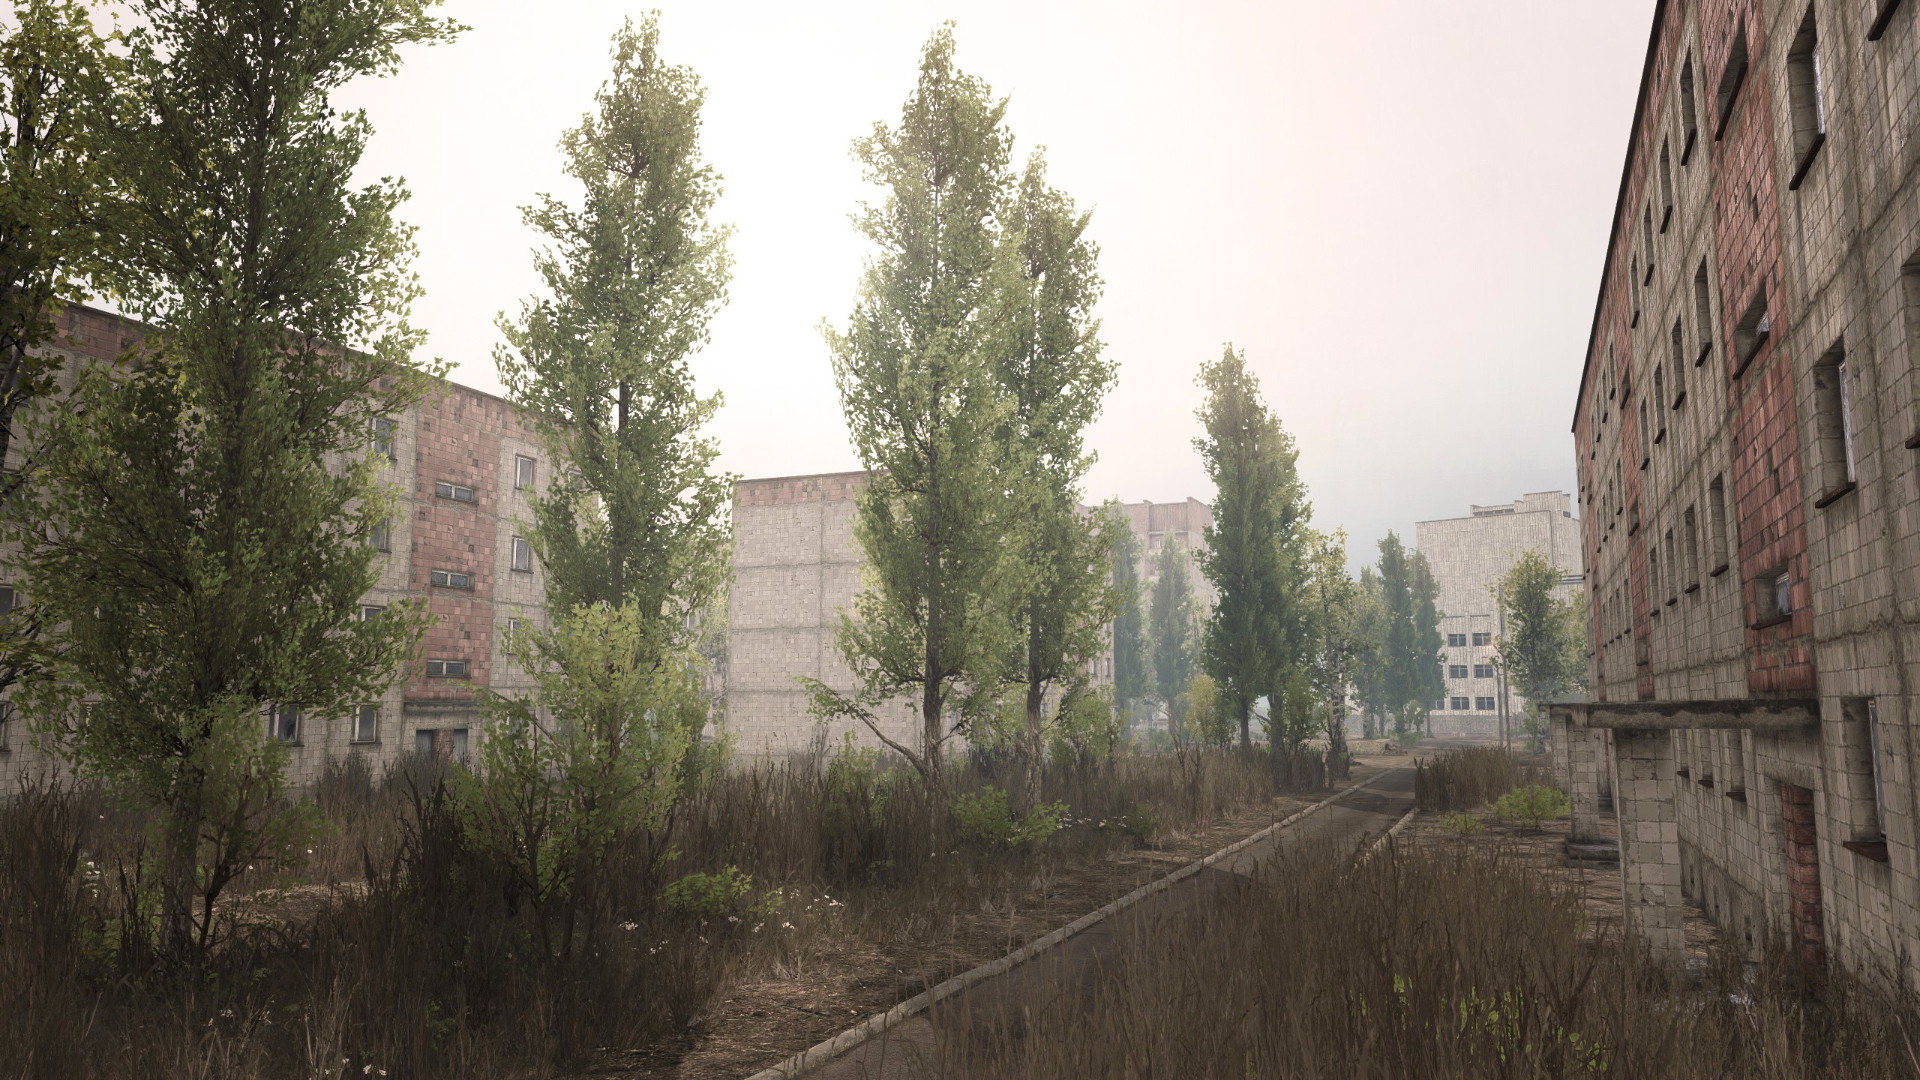 Chernobyl steam